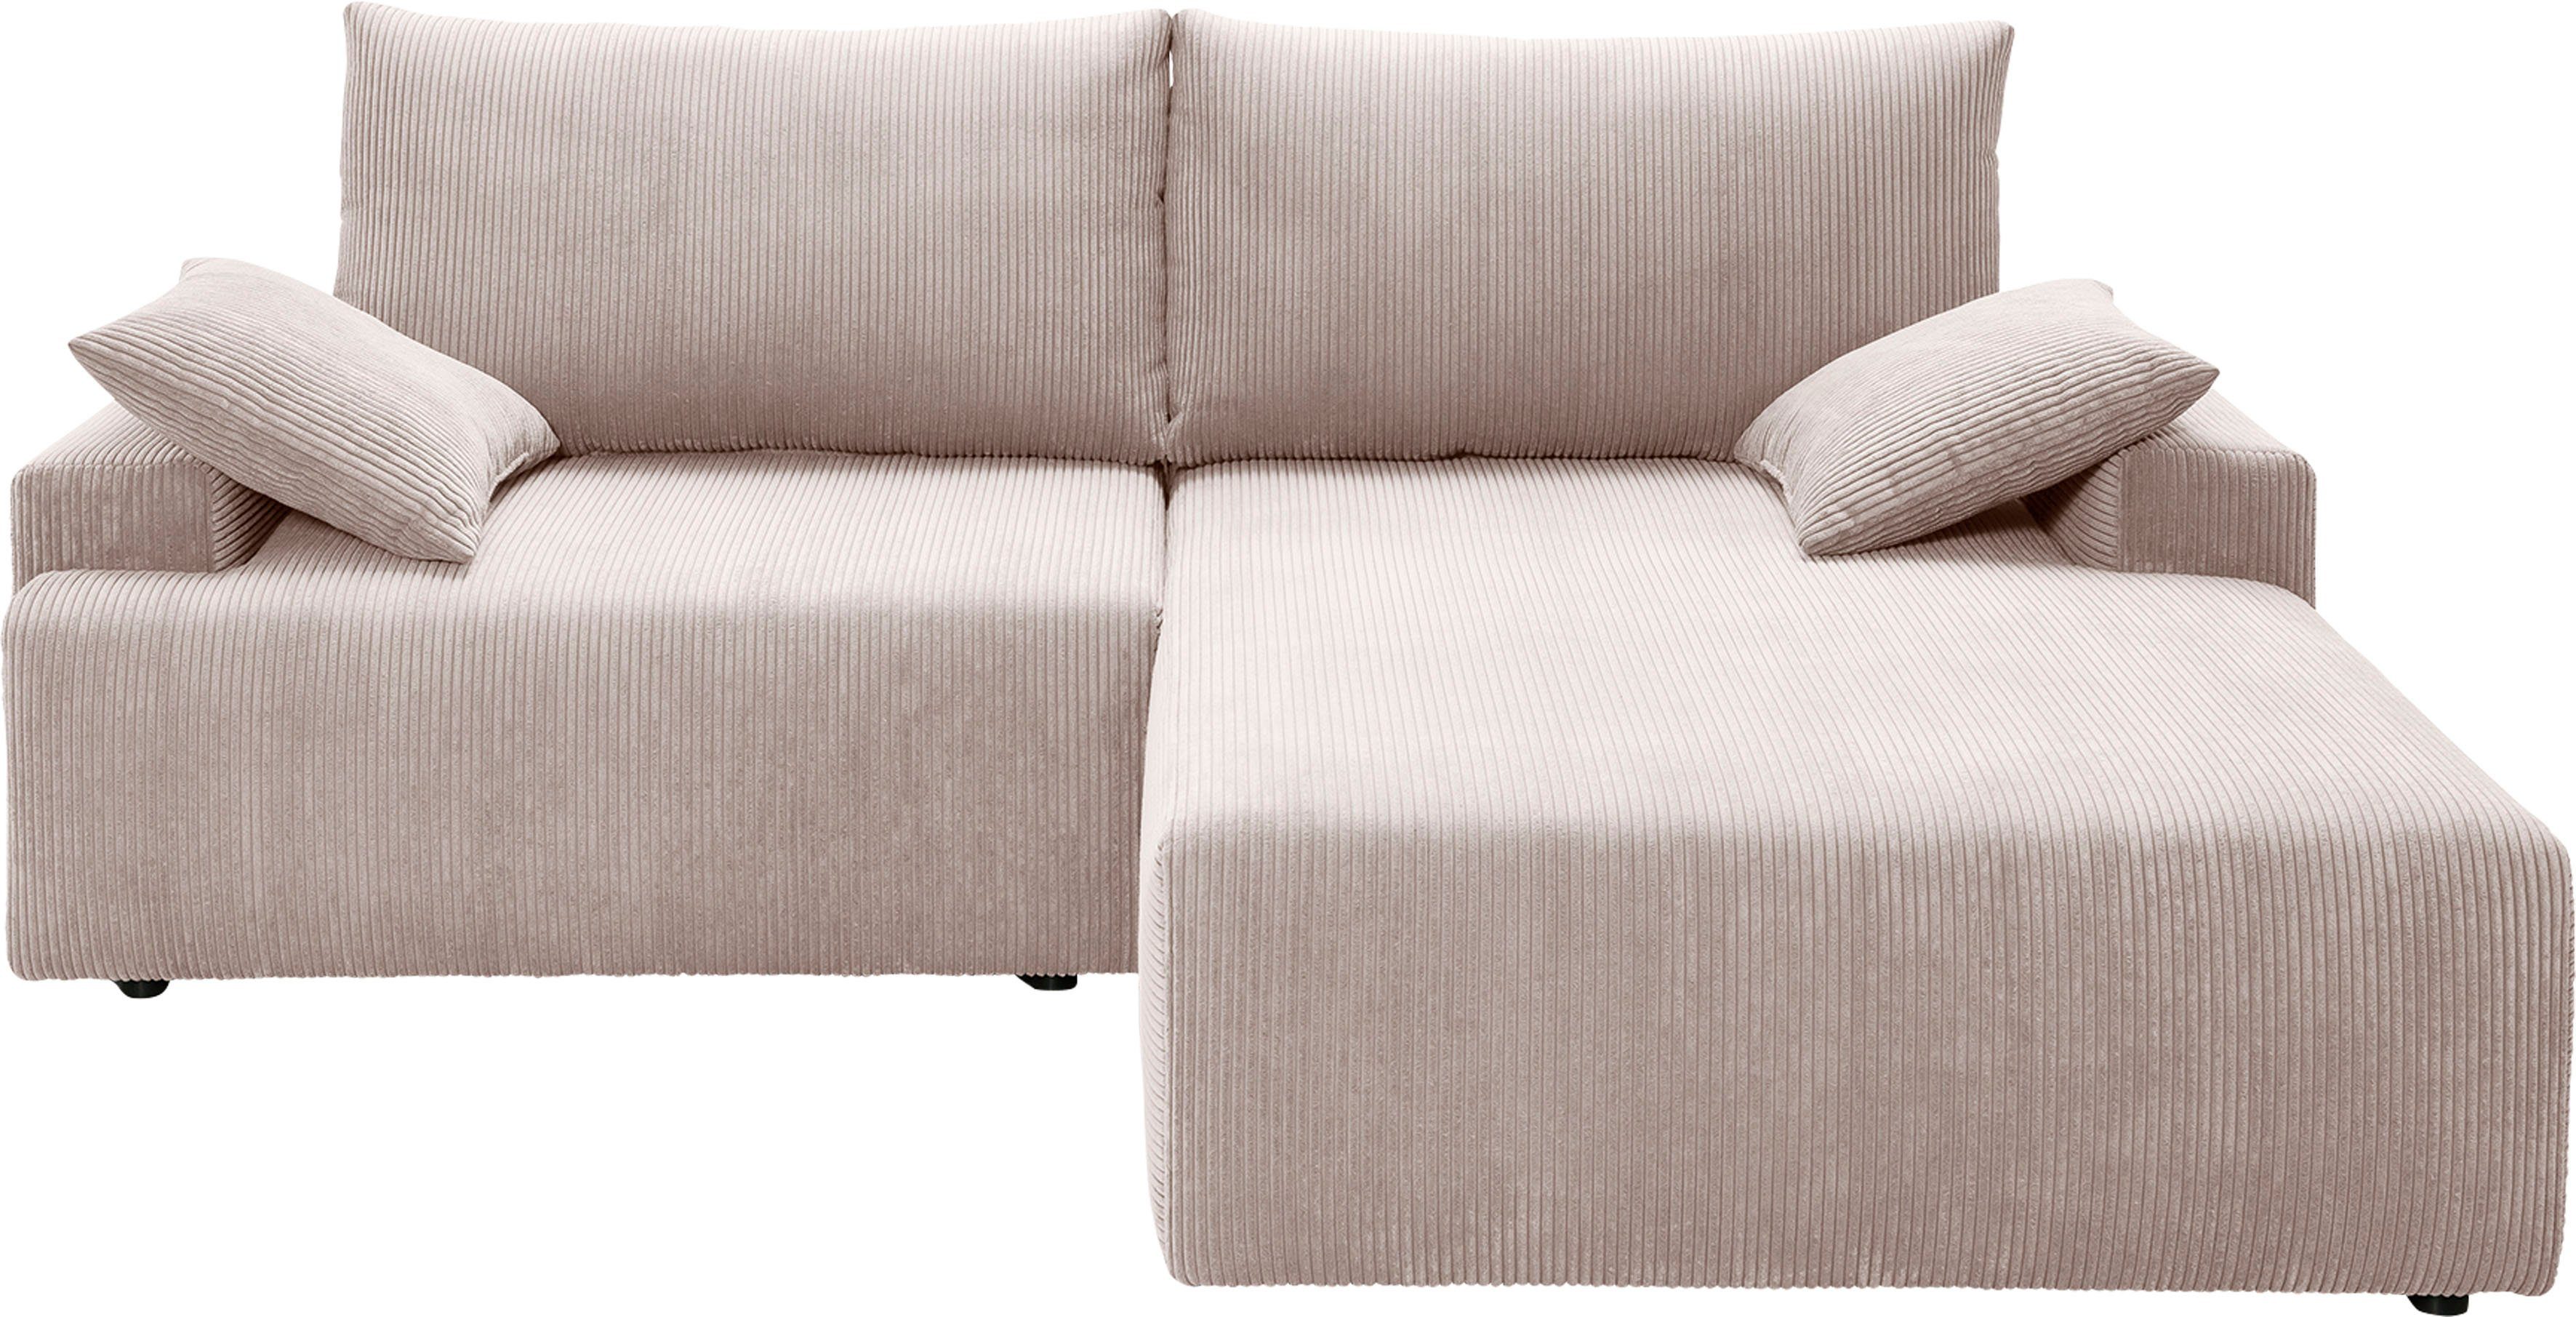 Cord-Farben Orinoko, in Ecksofa verschiedenen Bettkasten Bettfunktion exxpo sofa inklusive biege - und fashion